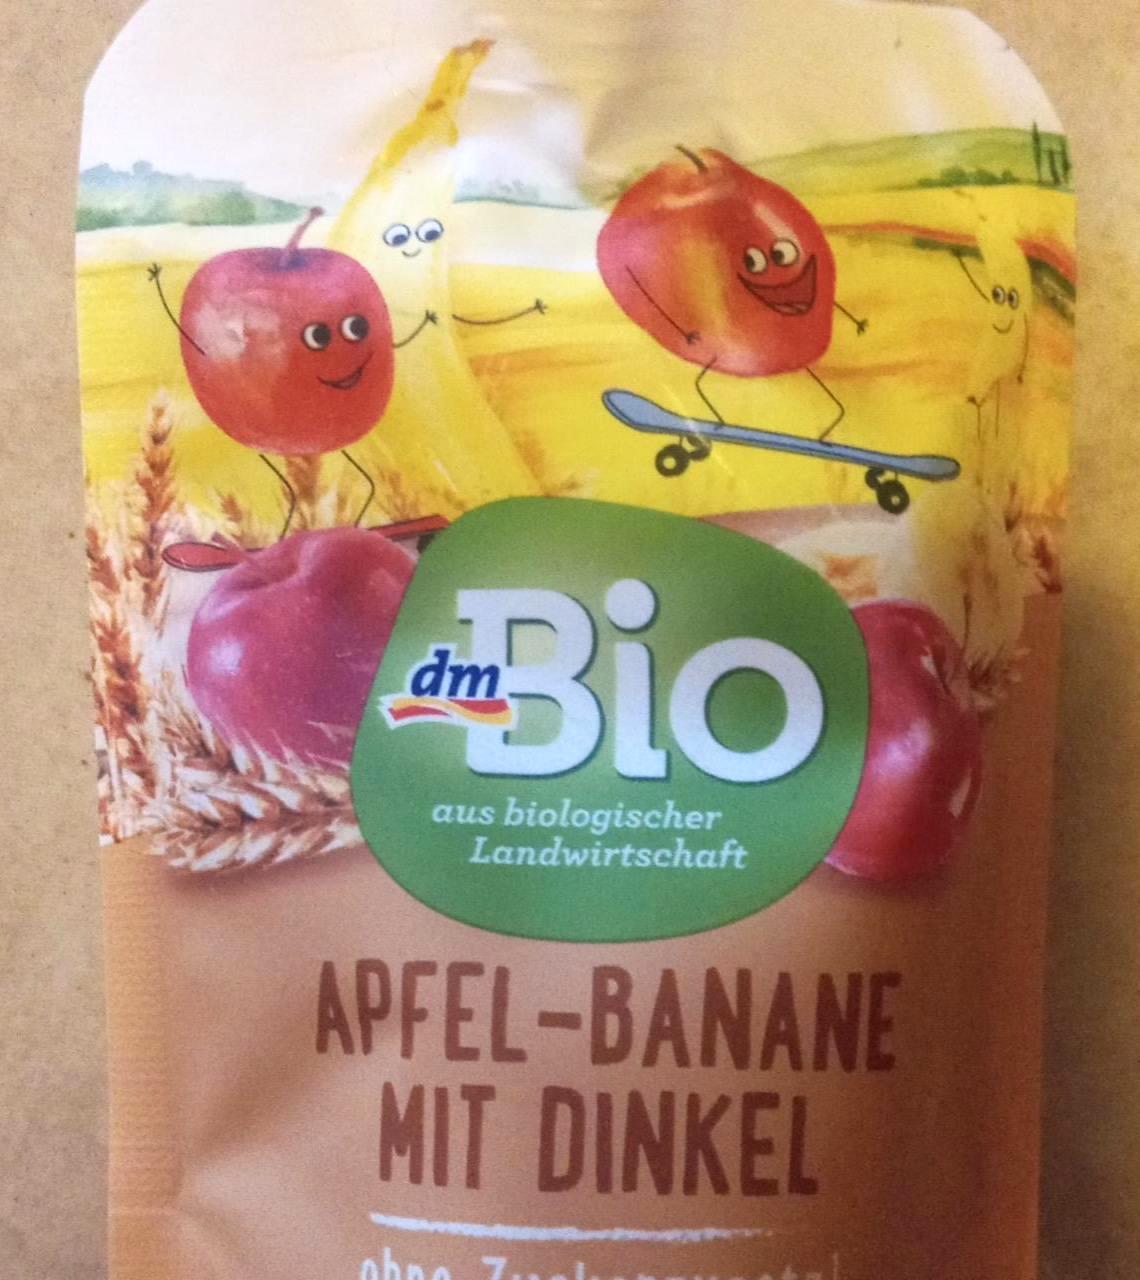 Képek - Bébi desszert Apfel-banane mit dinkel dmBio